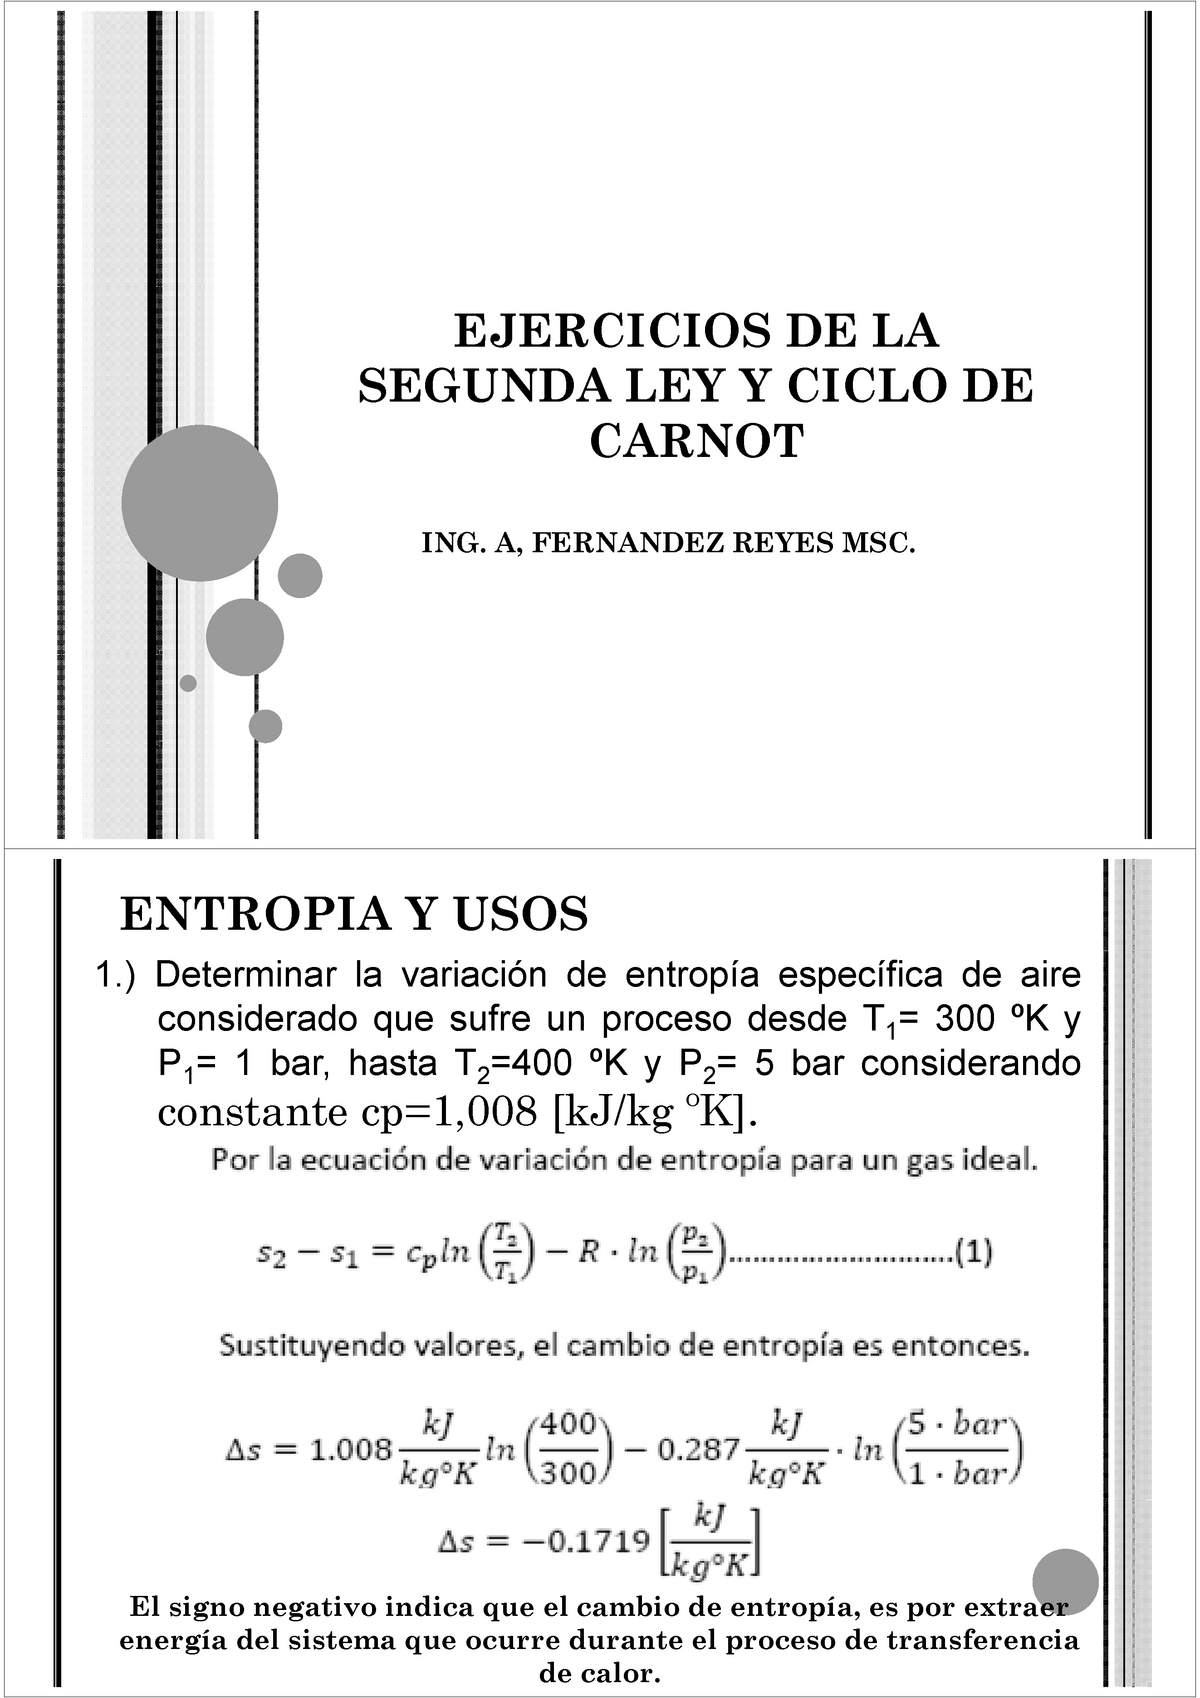 131142796 Ejercicios de La Segunda Ley y Ciclo de Carnot - EJERCICIOS DE LA SEGUNDA  LEY Y CICLO DE - Studocu